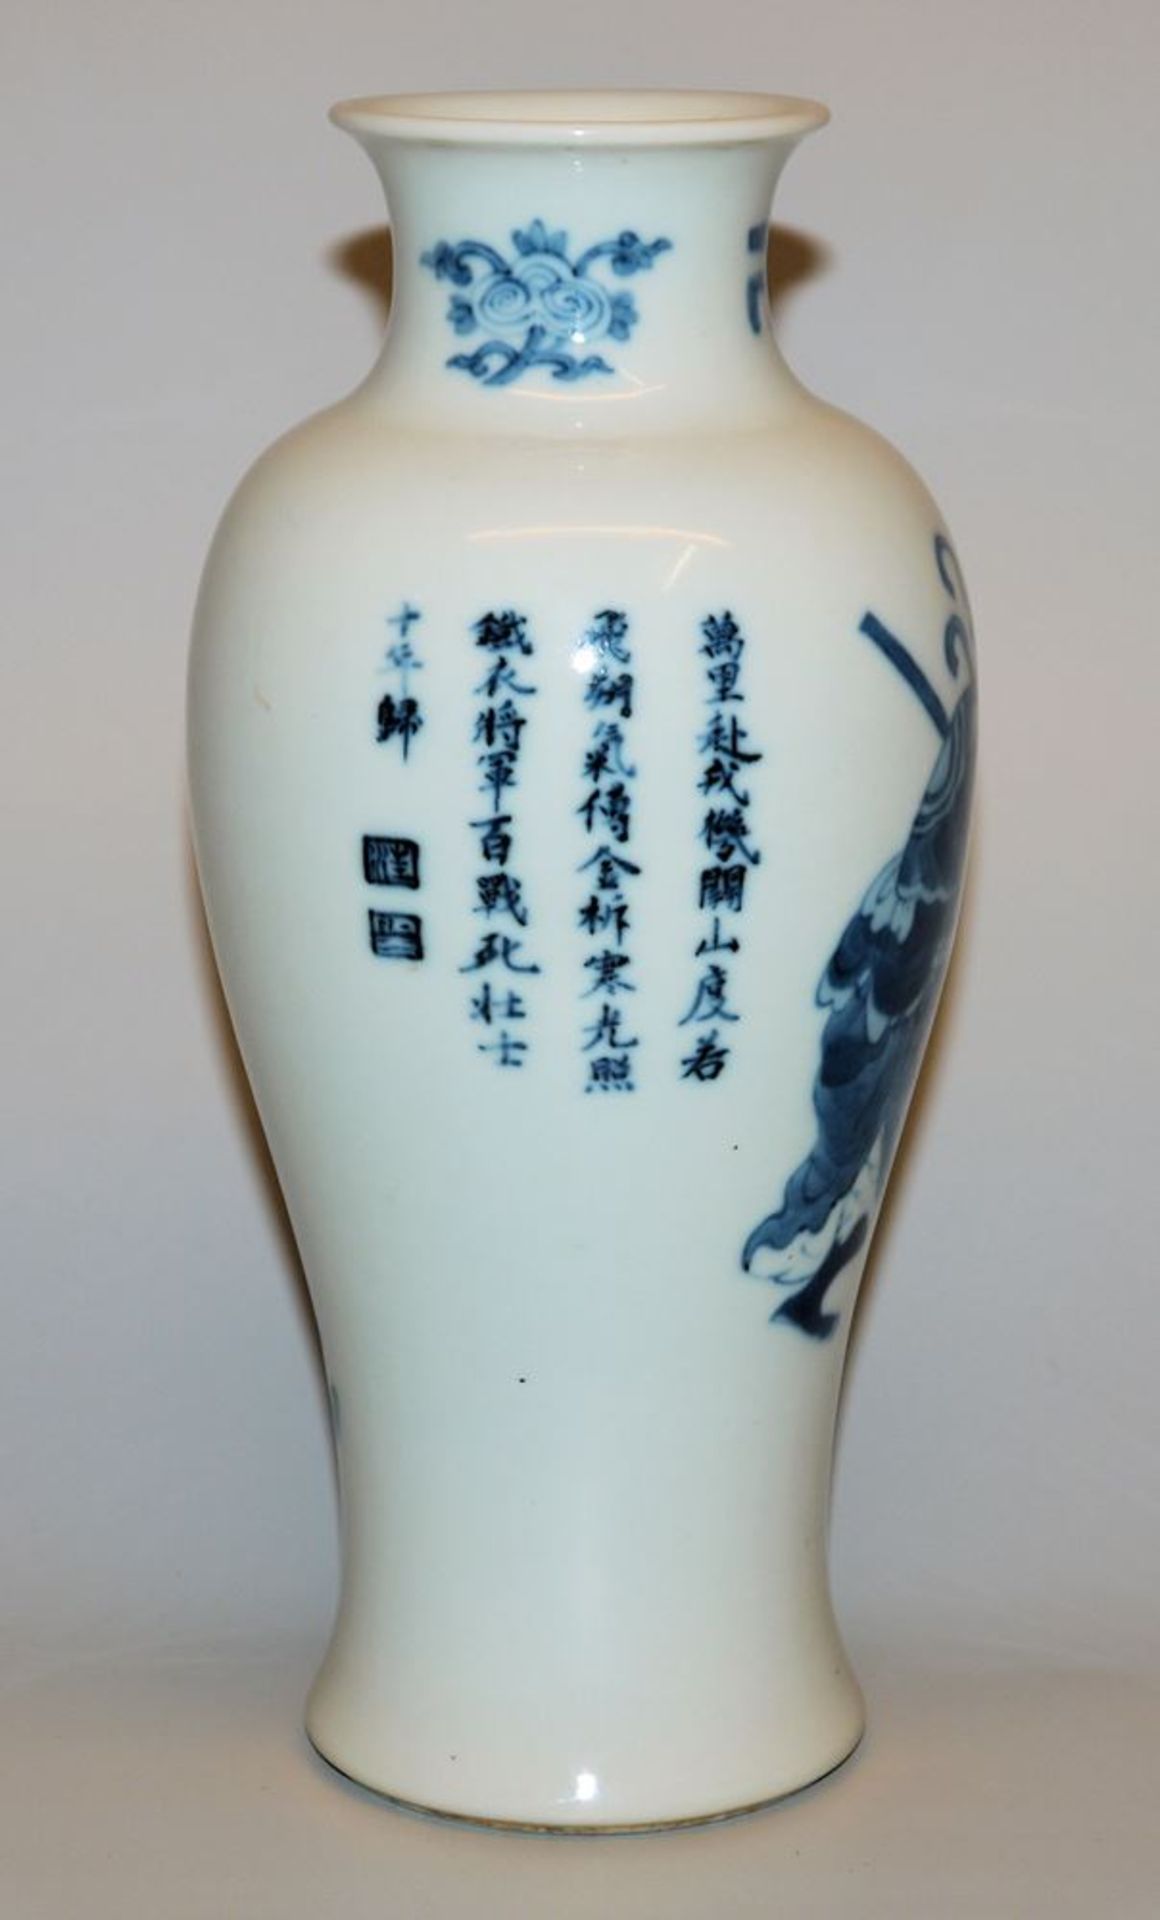 Blauweiß-Balustervase mit kriegerischer Szene, China 20. Jh. - Bild 2 aus 3